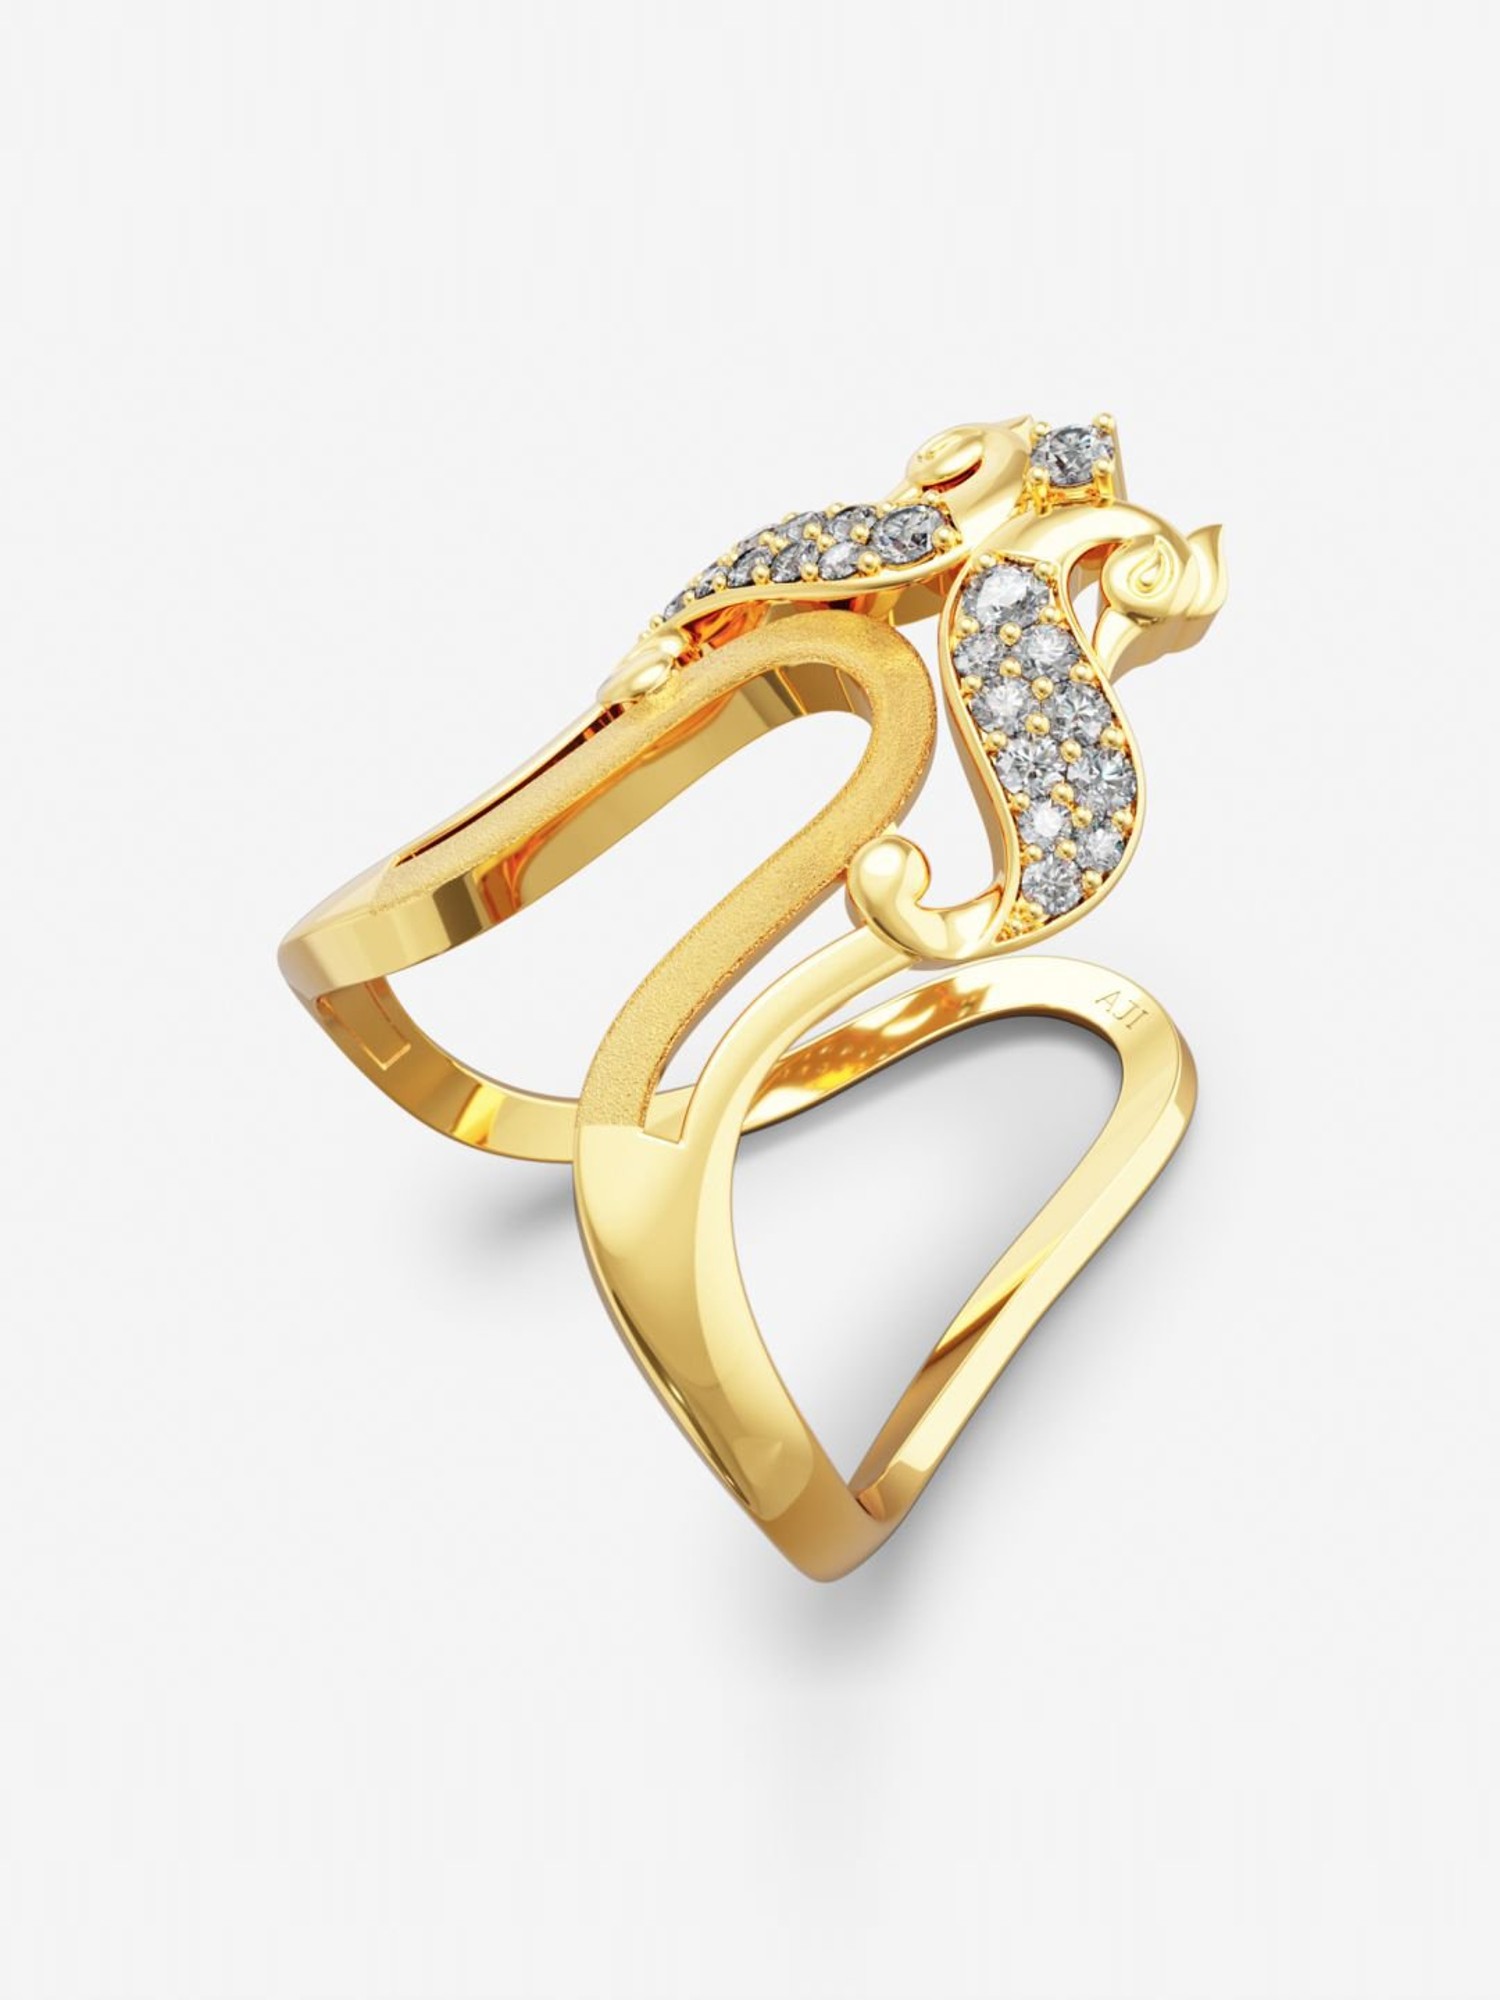 Latest diamond Vanki Ring designs with price / Malabar gold and diamonds vanki  ring designs - YouTube